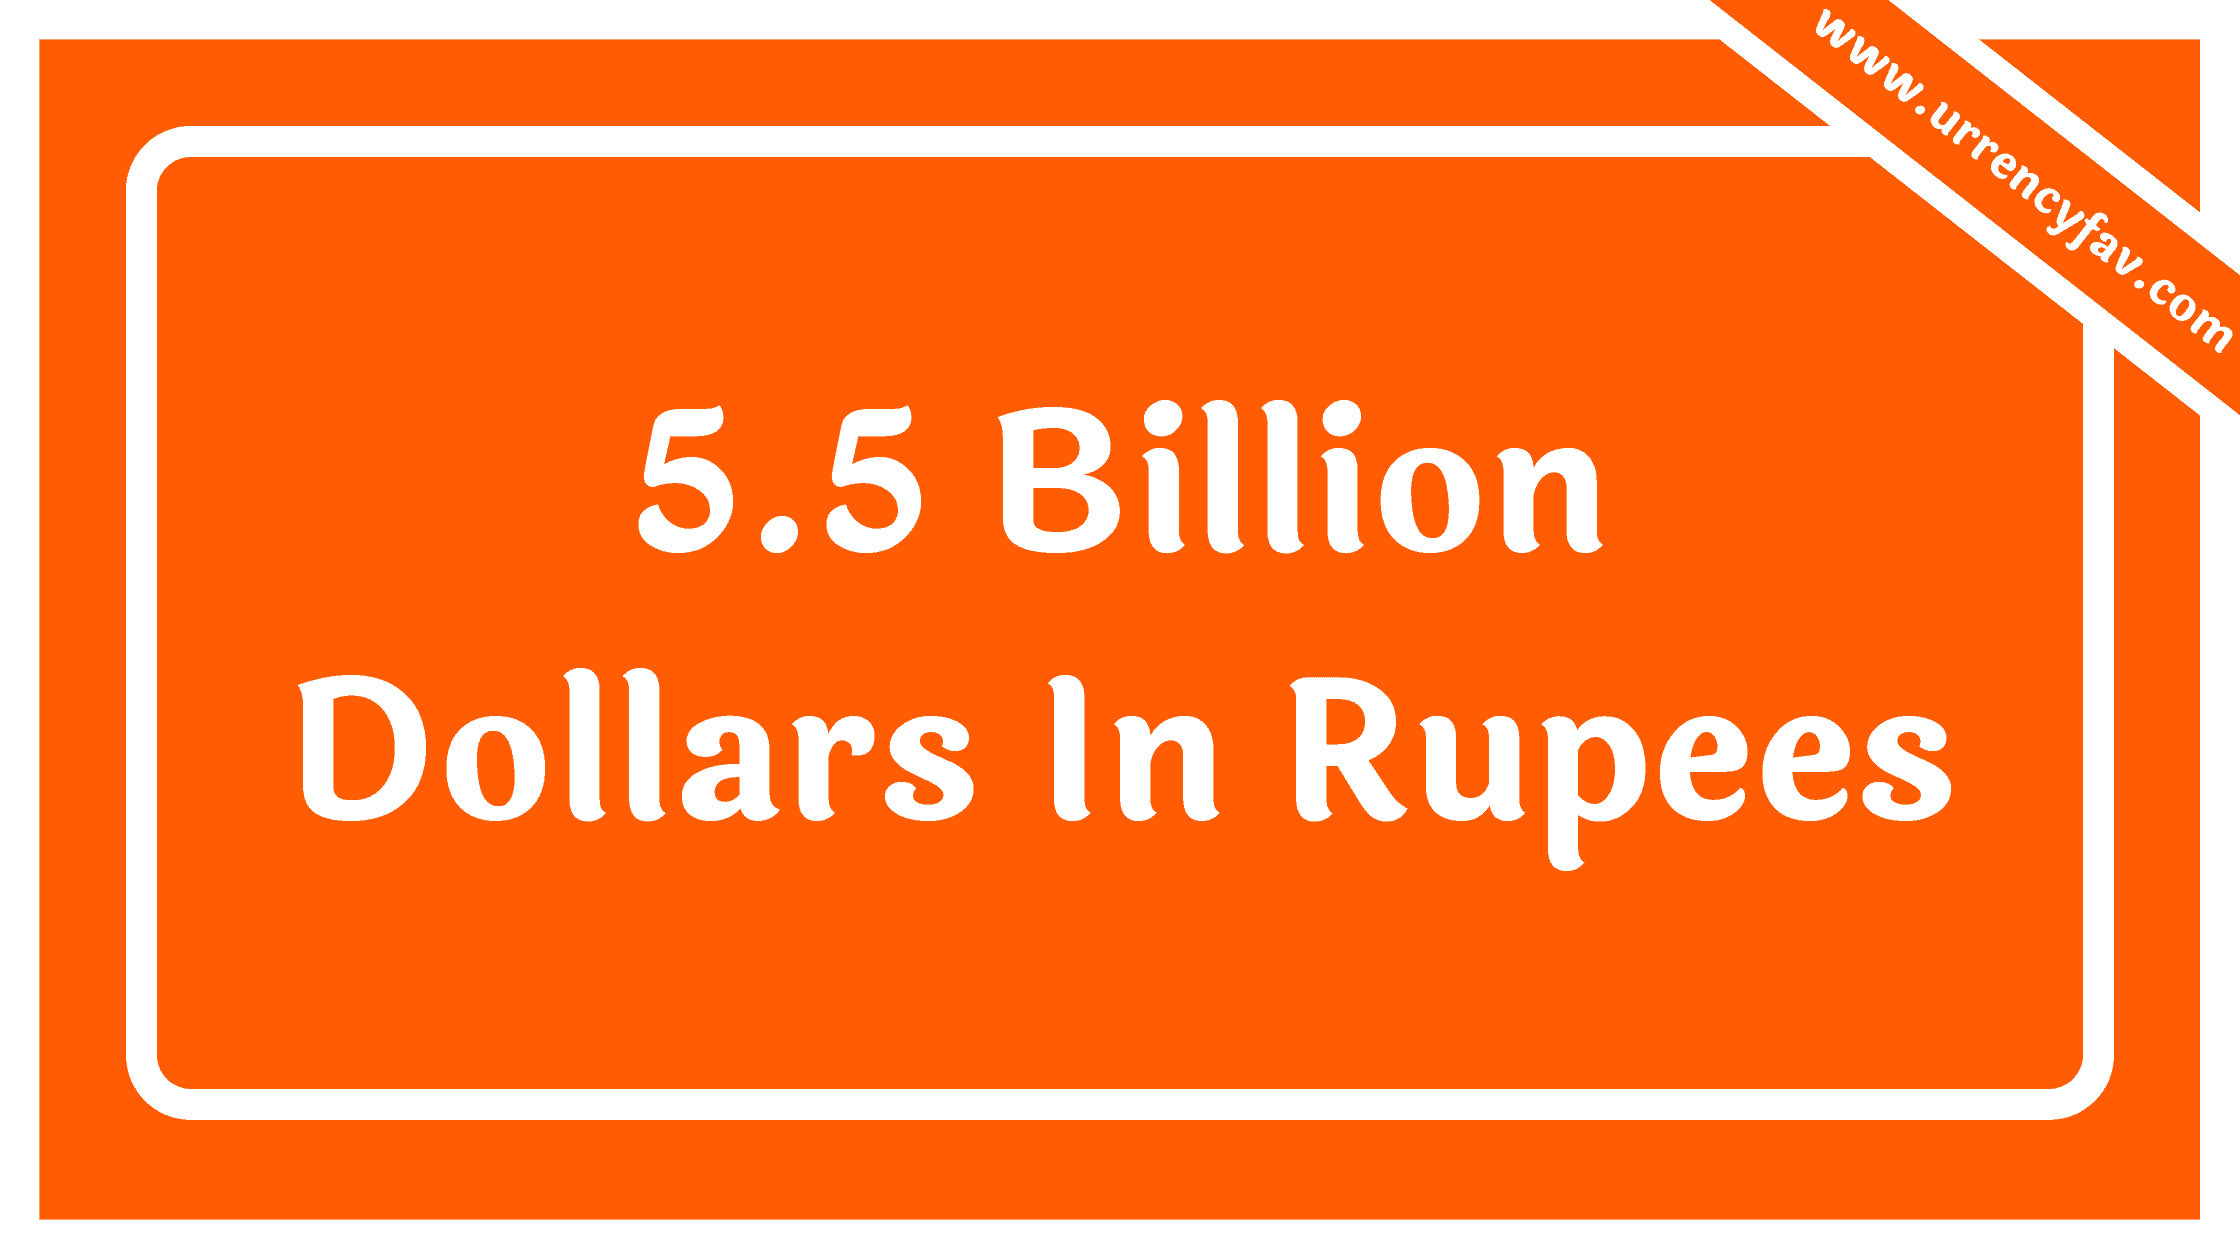 5.5 Billion Dollars In Rupees